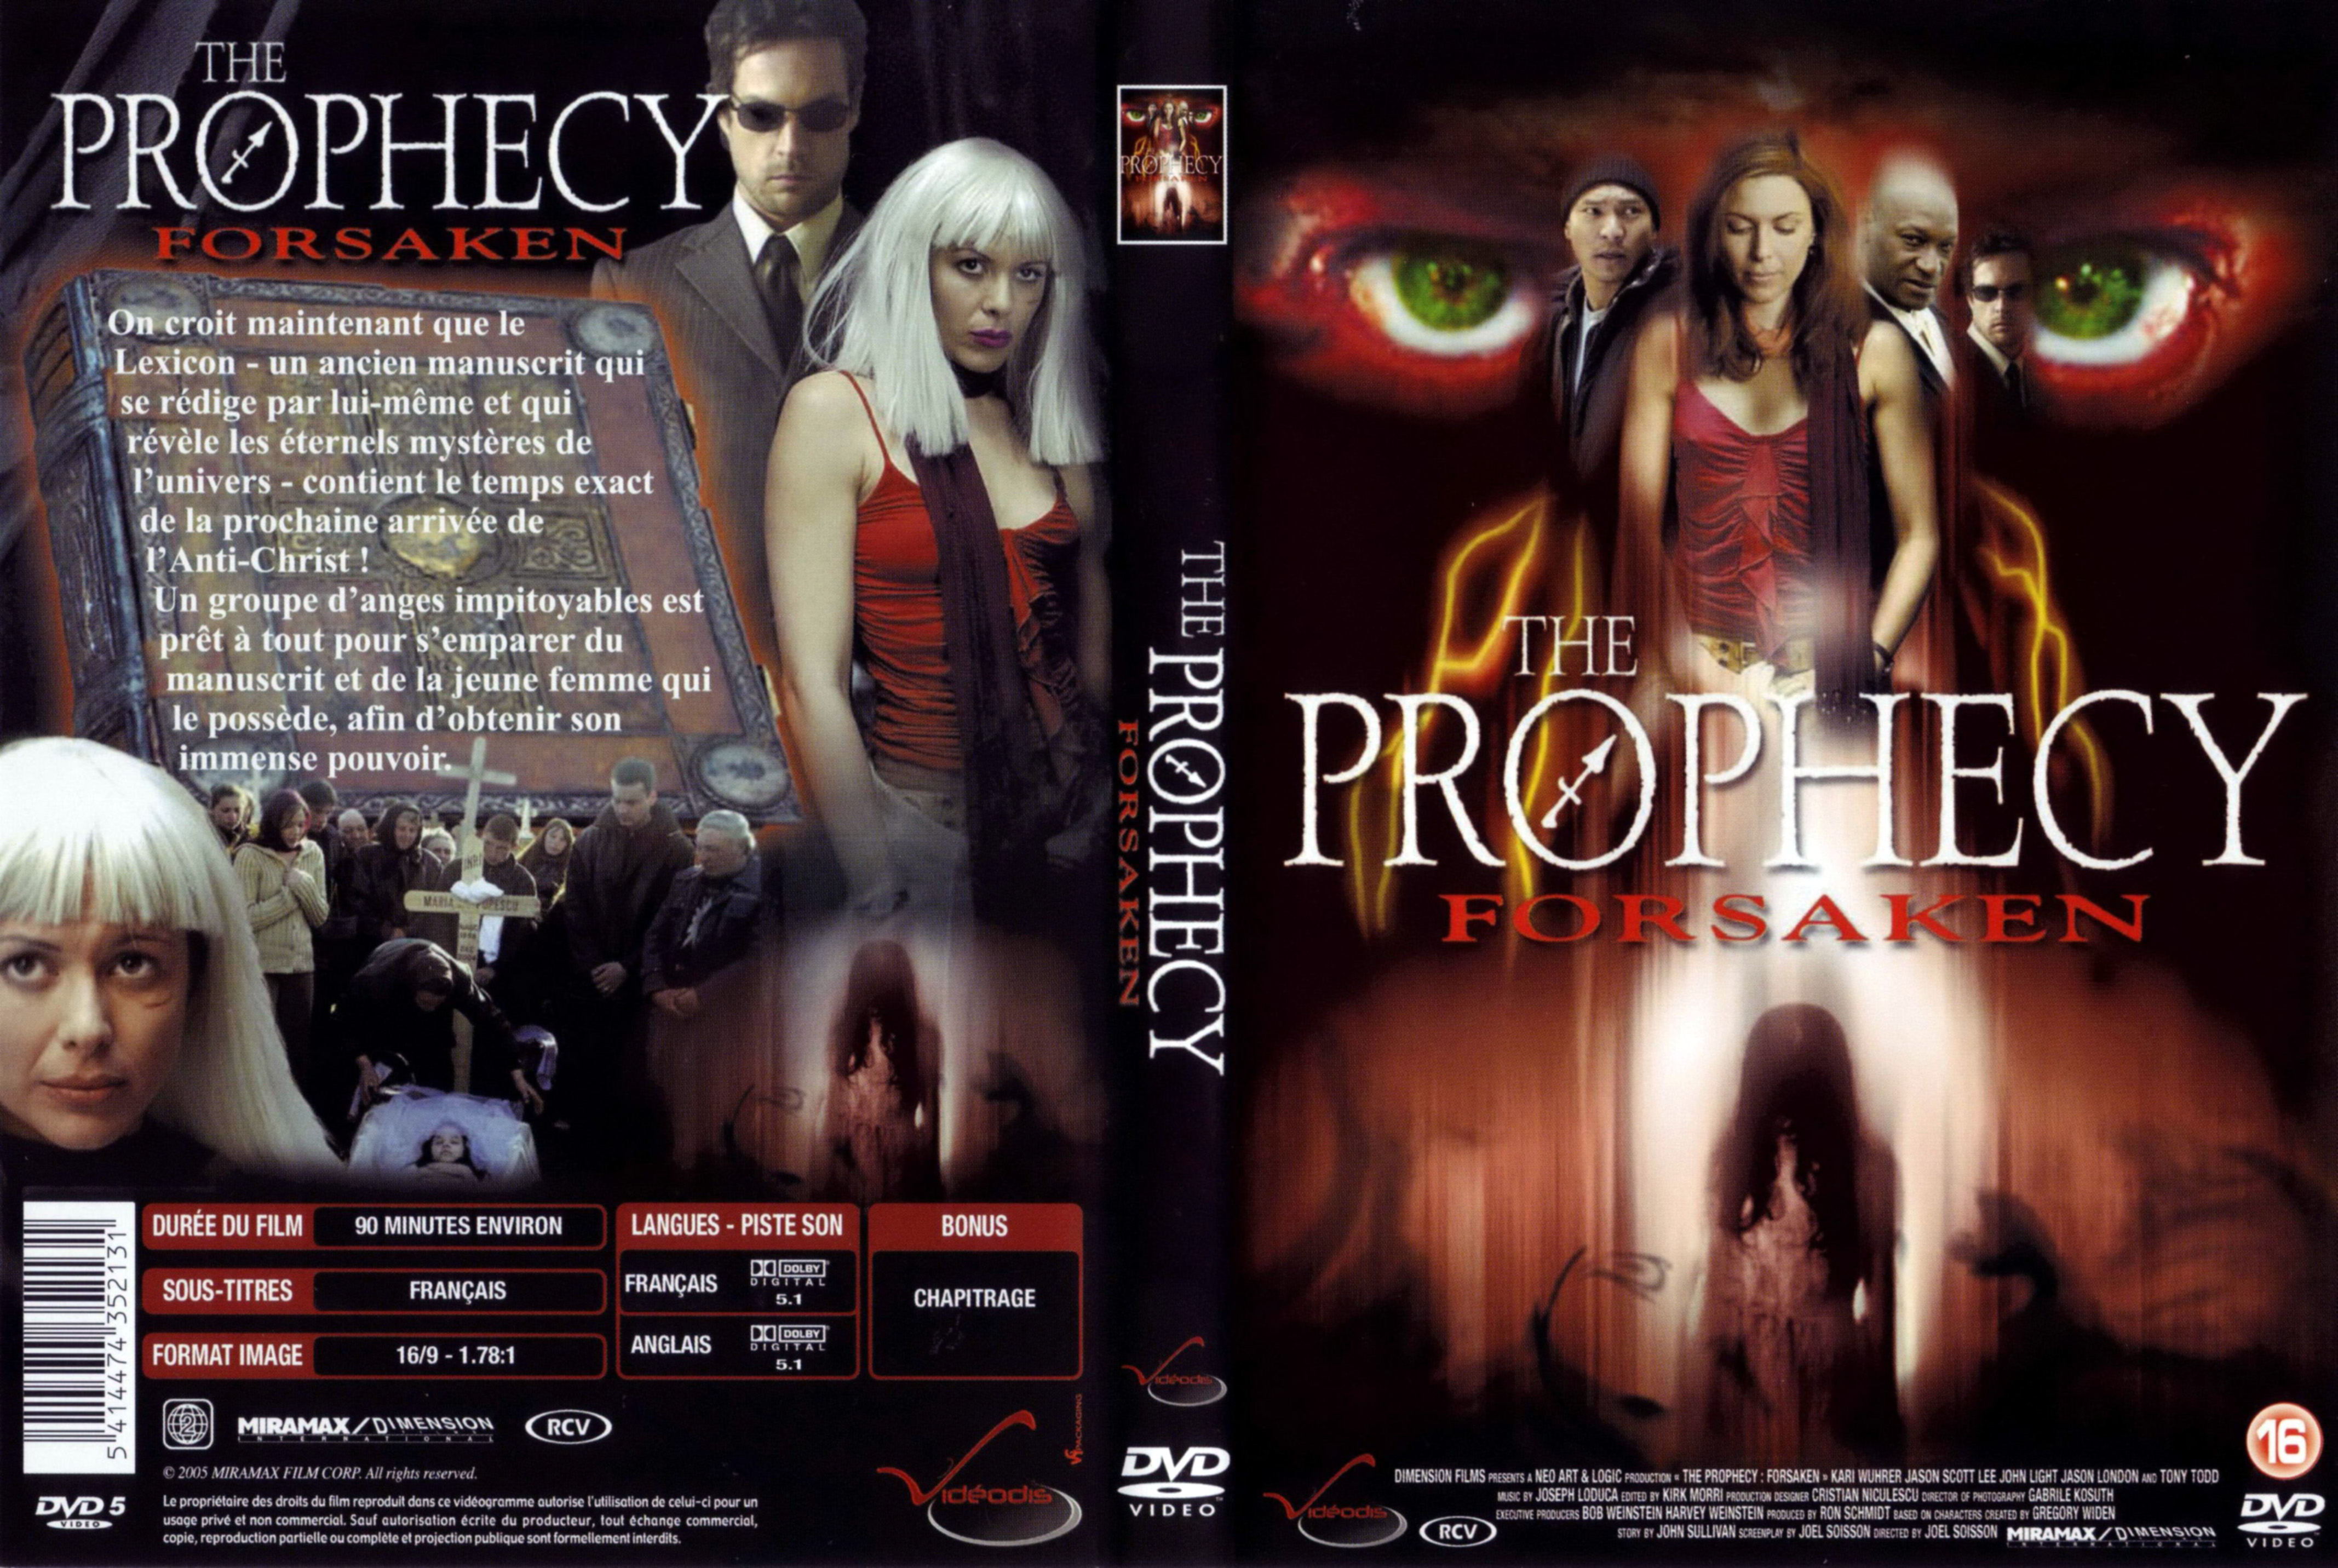 Jaquette DVD The prophecy forsaken